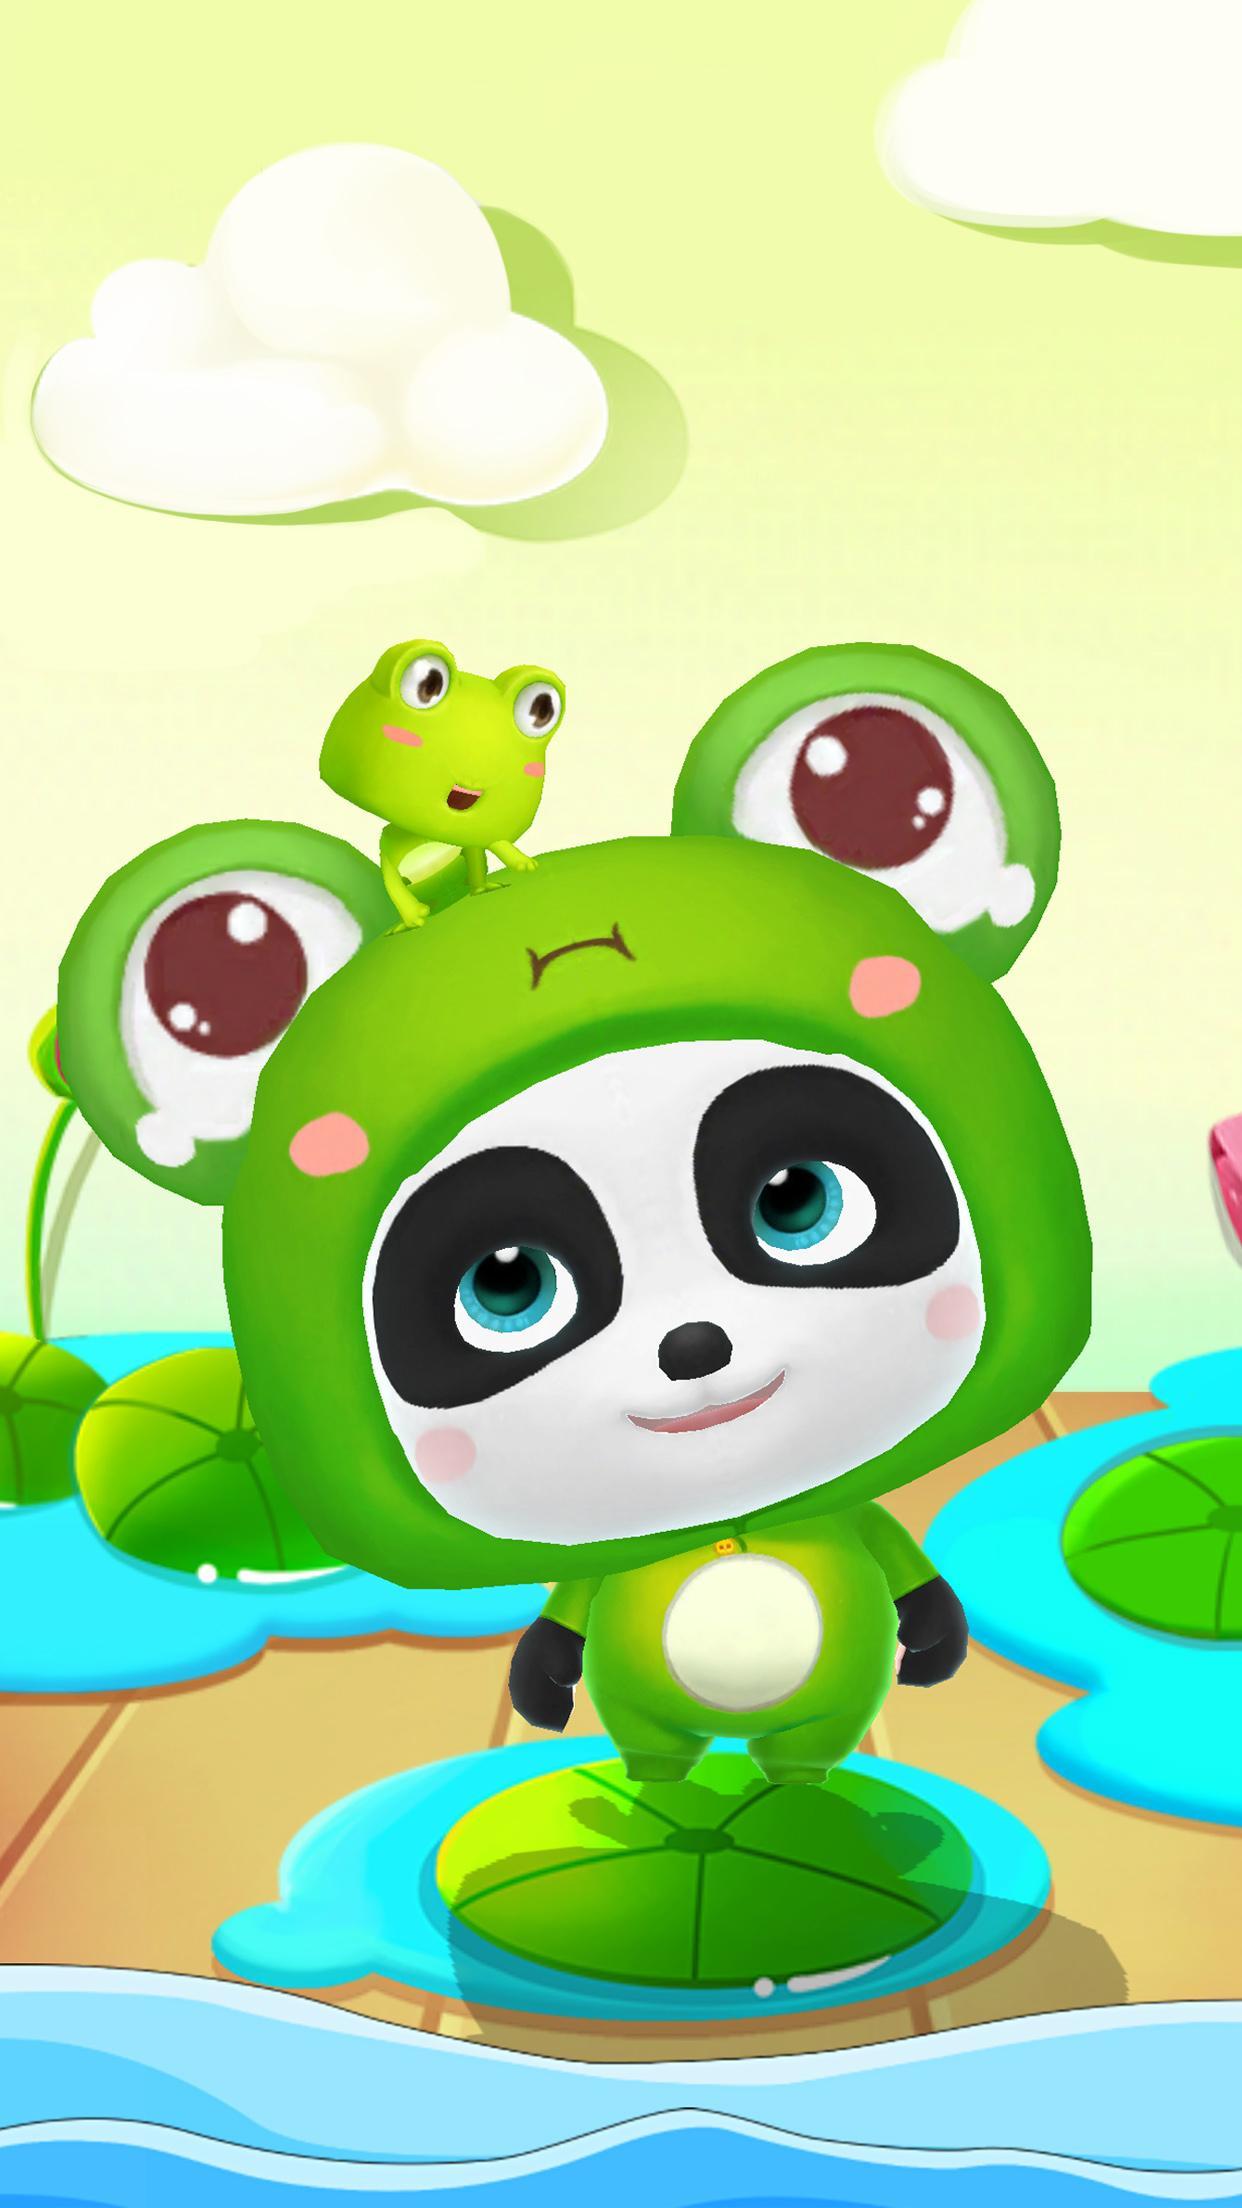 Talking Baby Panda - Kids Game 8.43.00.10 Screenshot 17